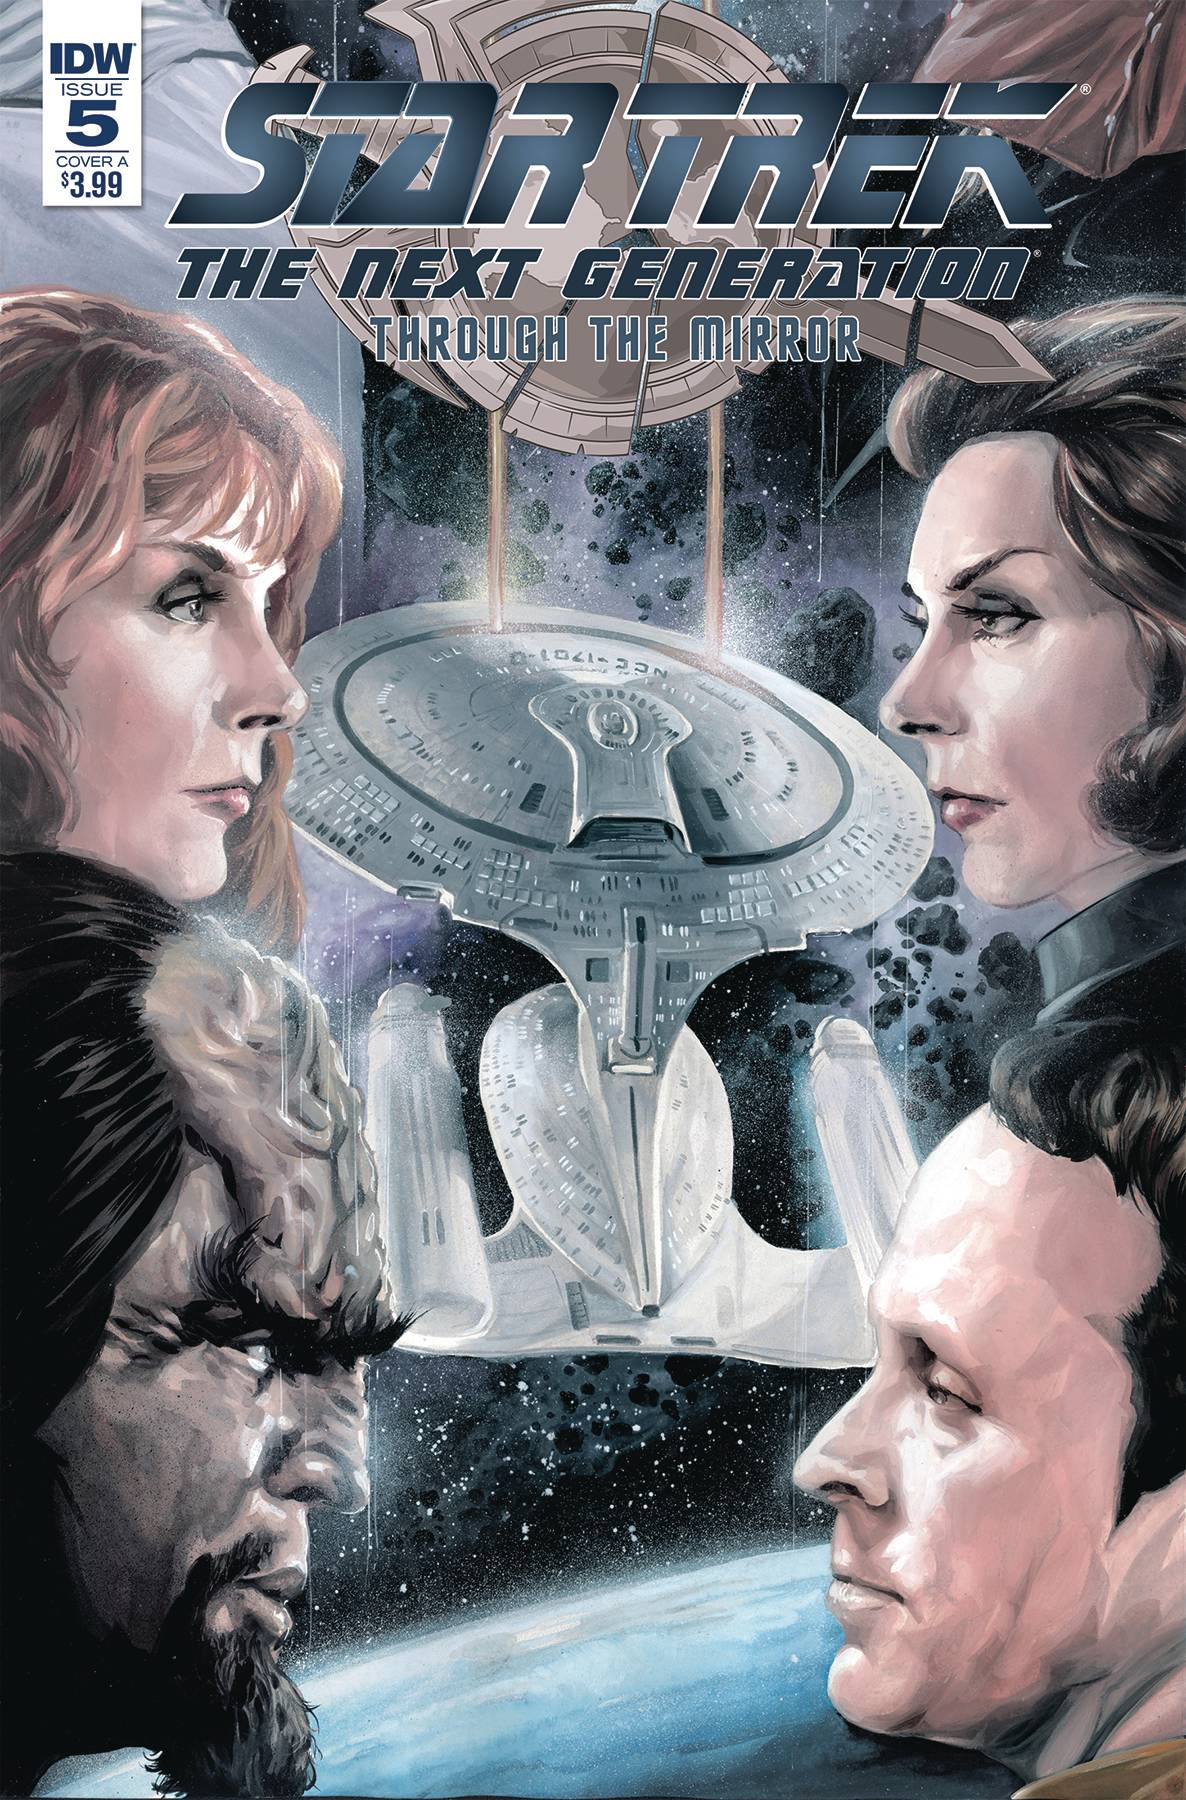 Star Trek Tng Through The Mirror #5 Cover A Woodward